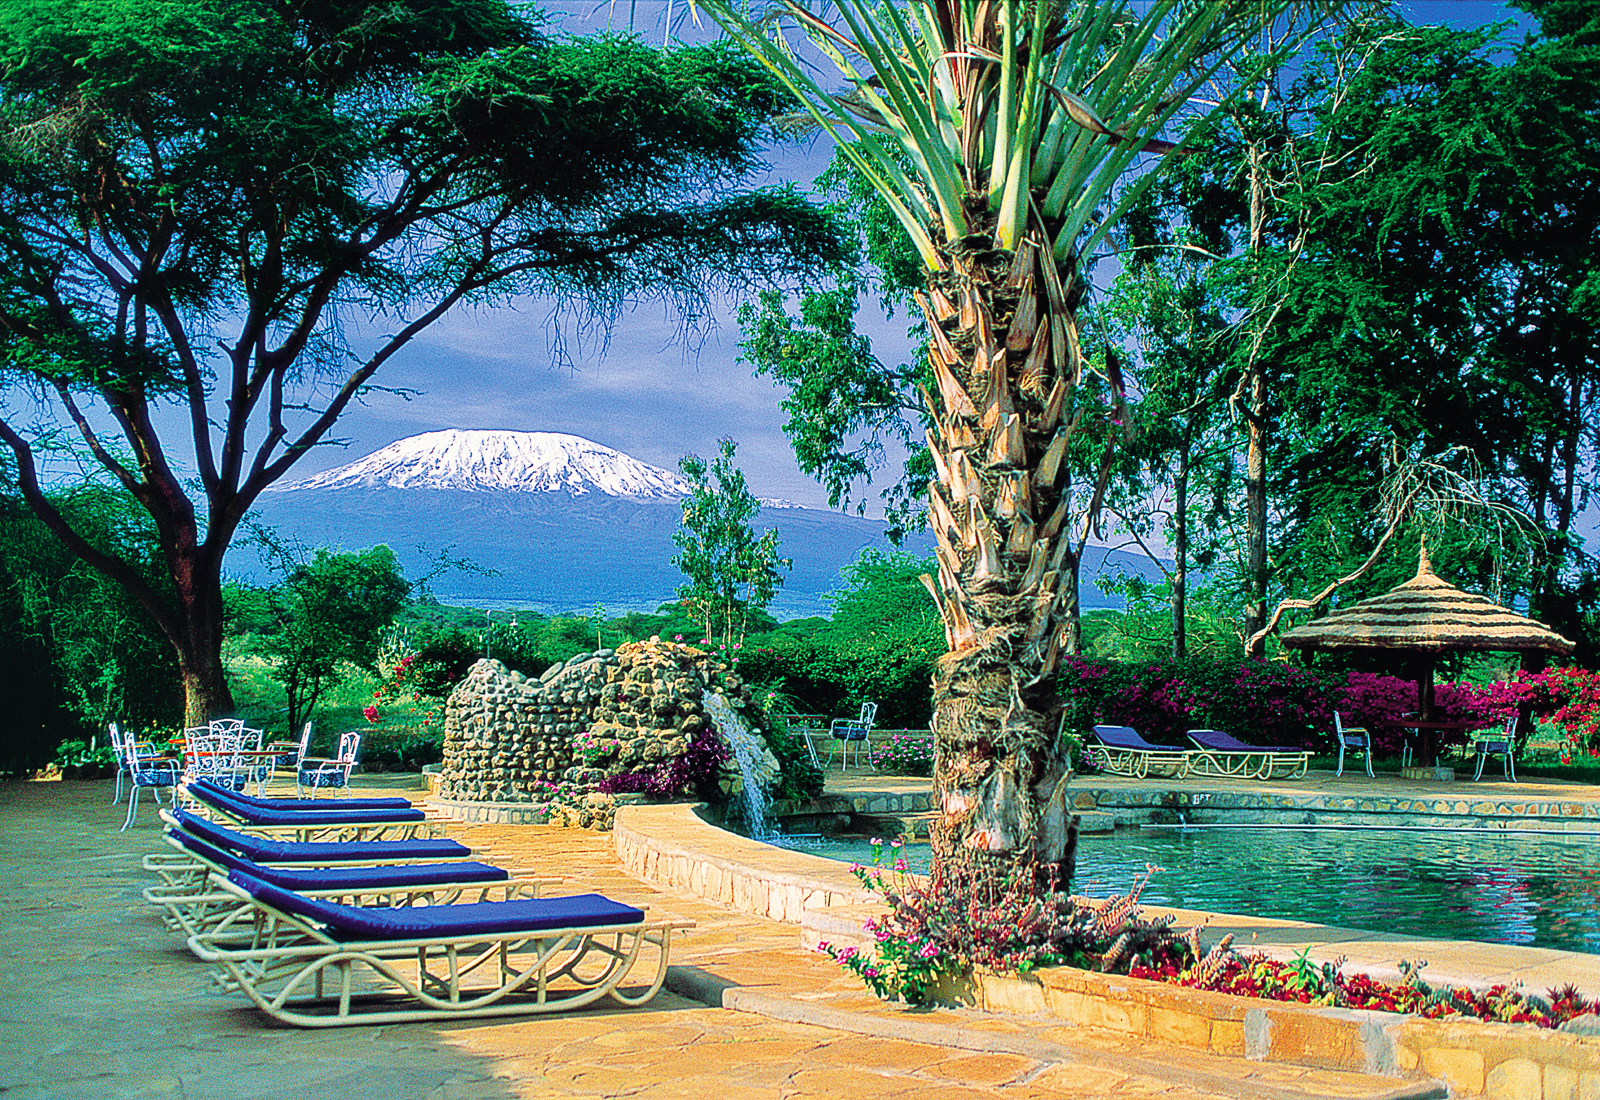 Amboseli-Sopa-Lodge-pool-with-kilimanjaro-in-view